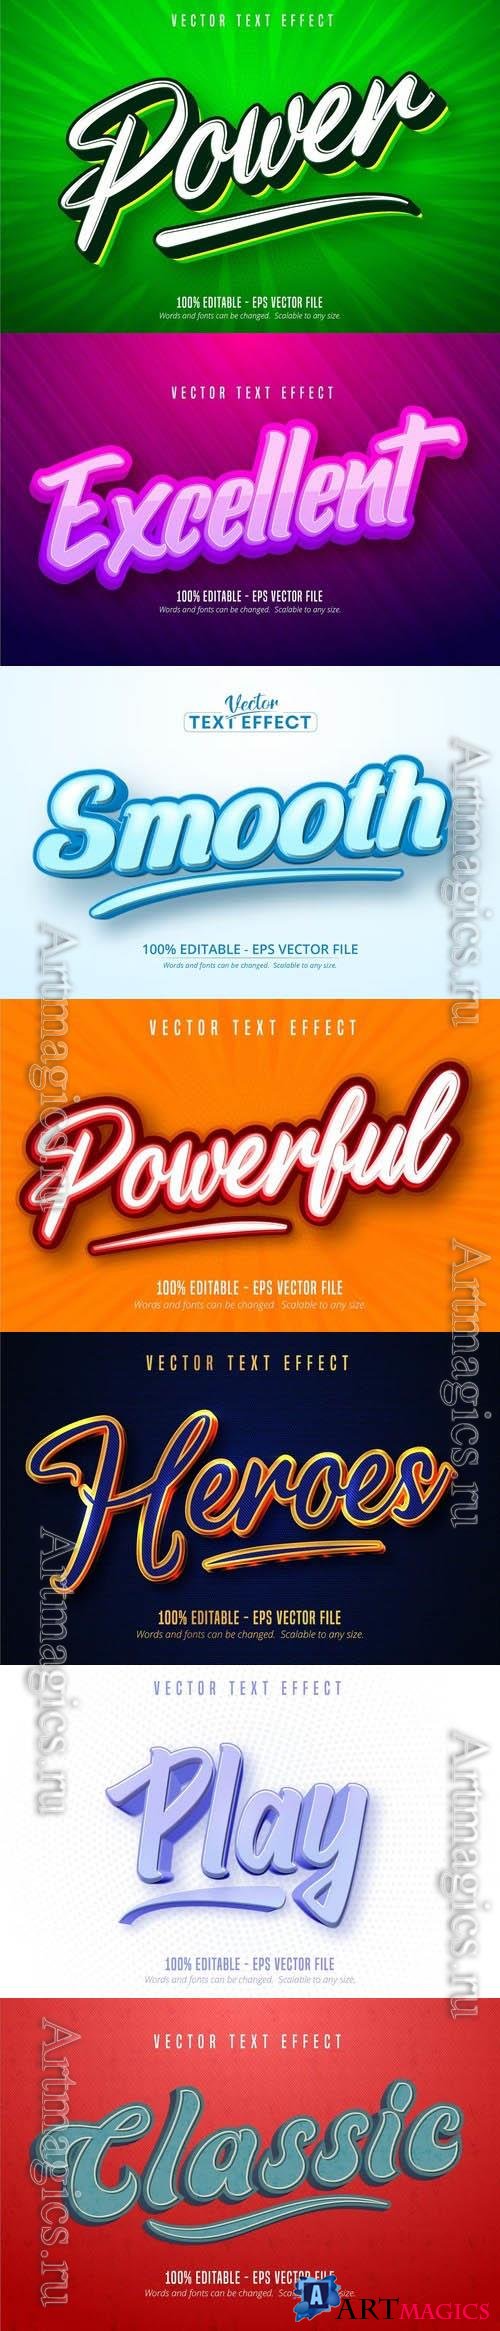 Vector 3d text editable, text effect font vol 119  